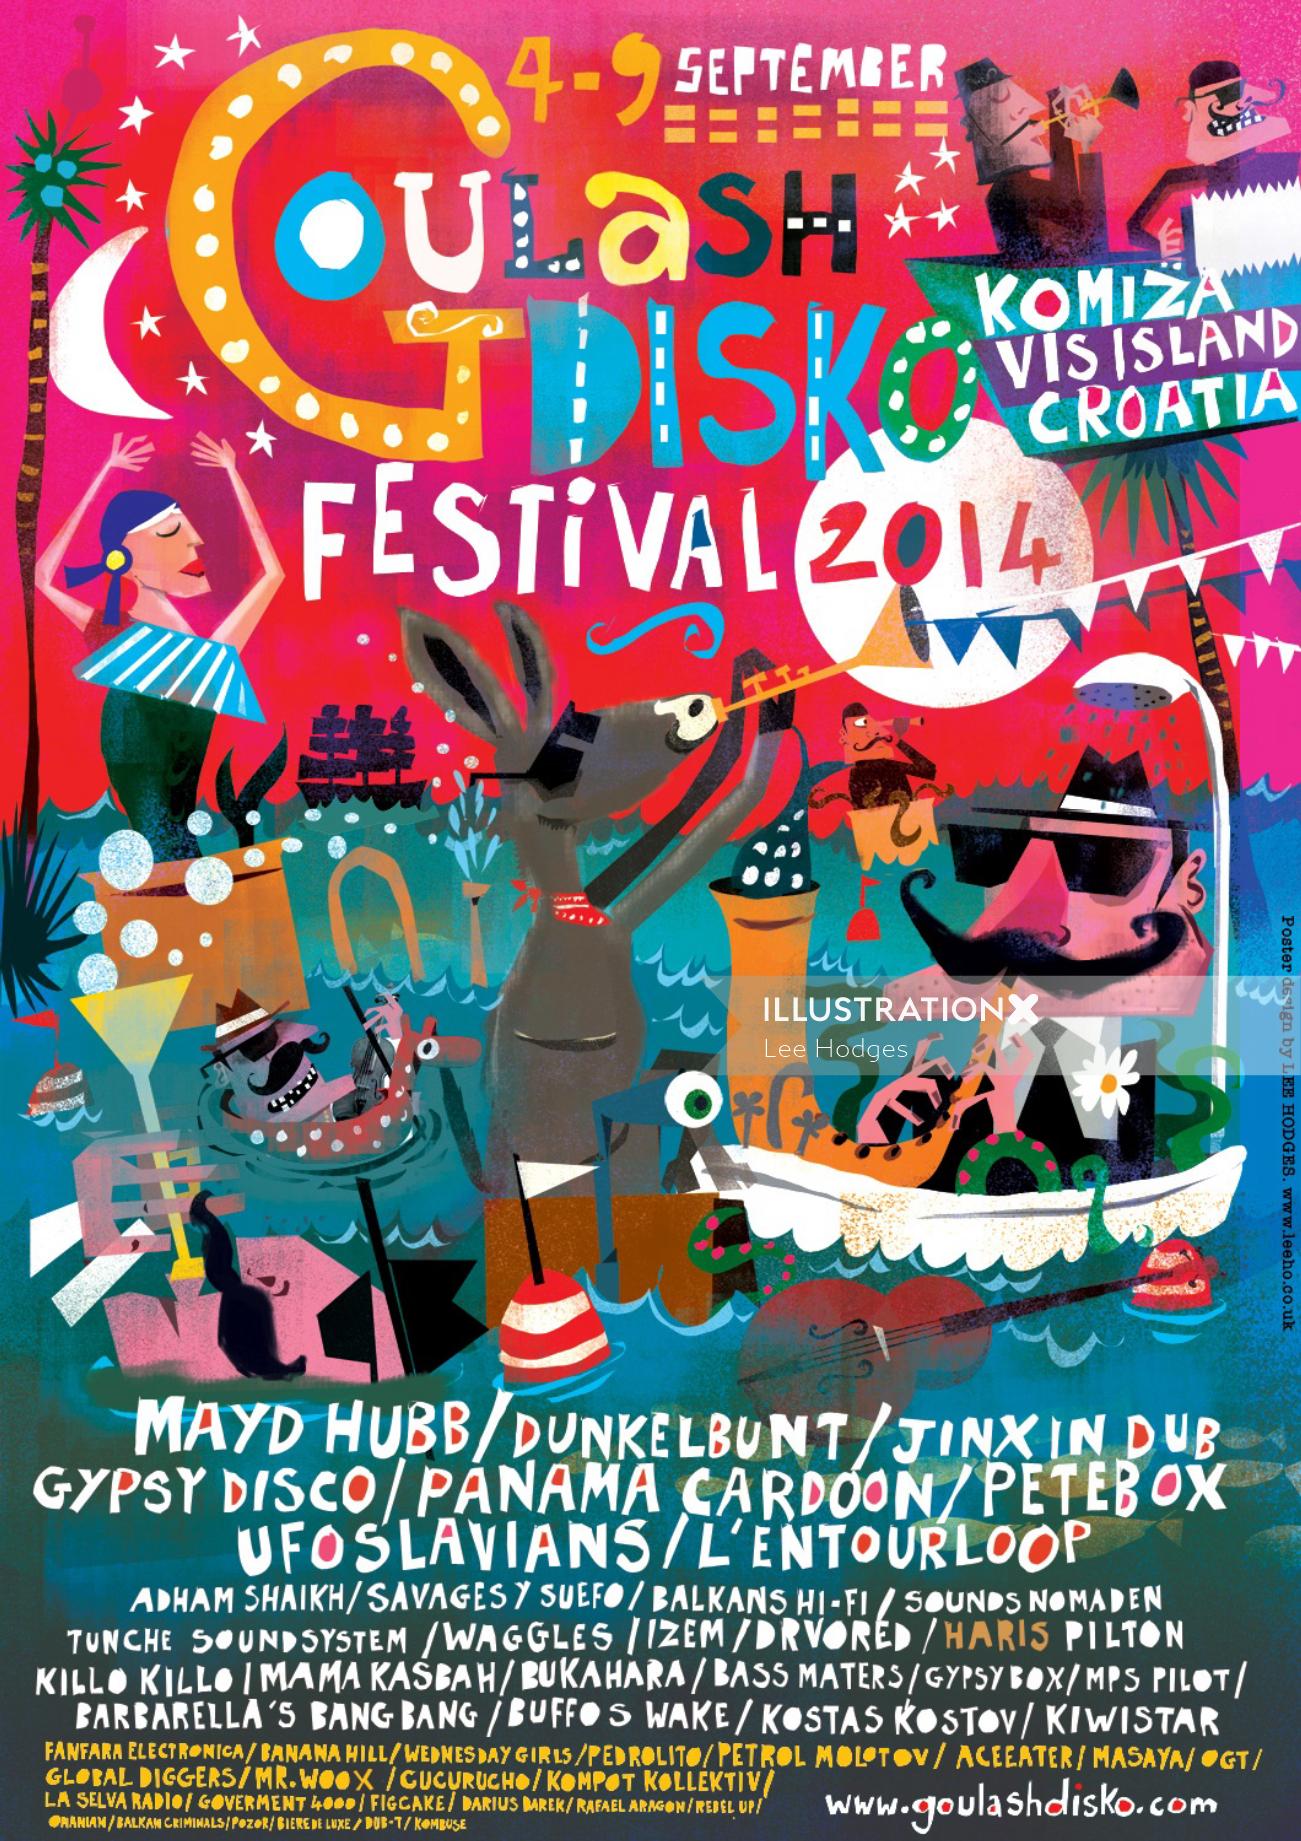 Arte do pôster para THE GOULASH DISKO FESTIVAL 2014